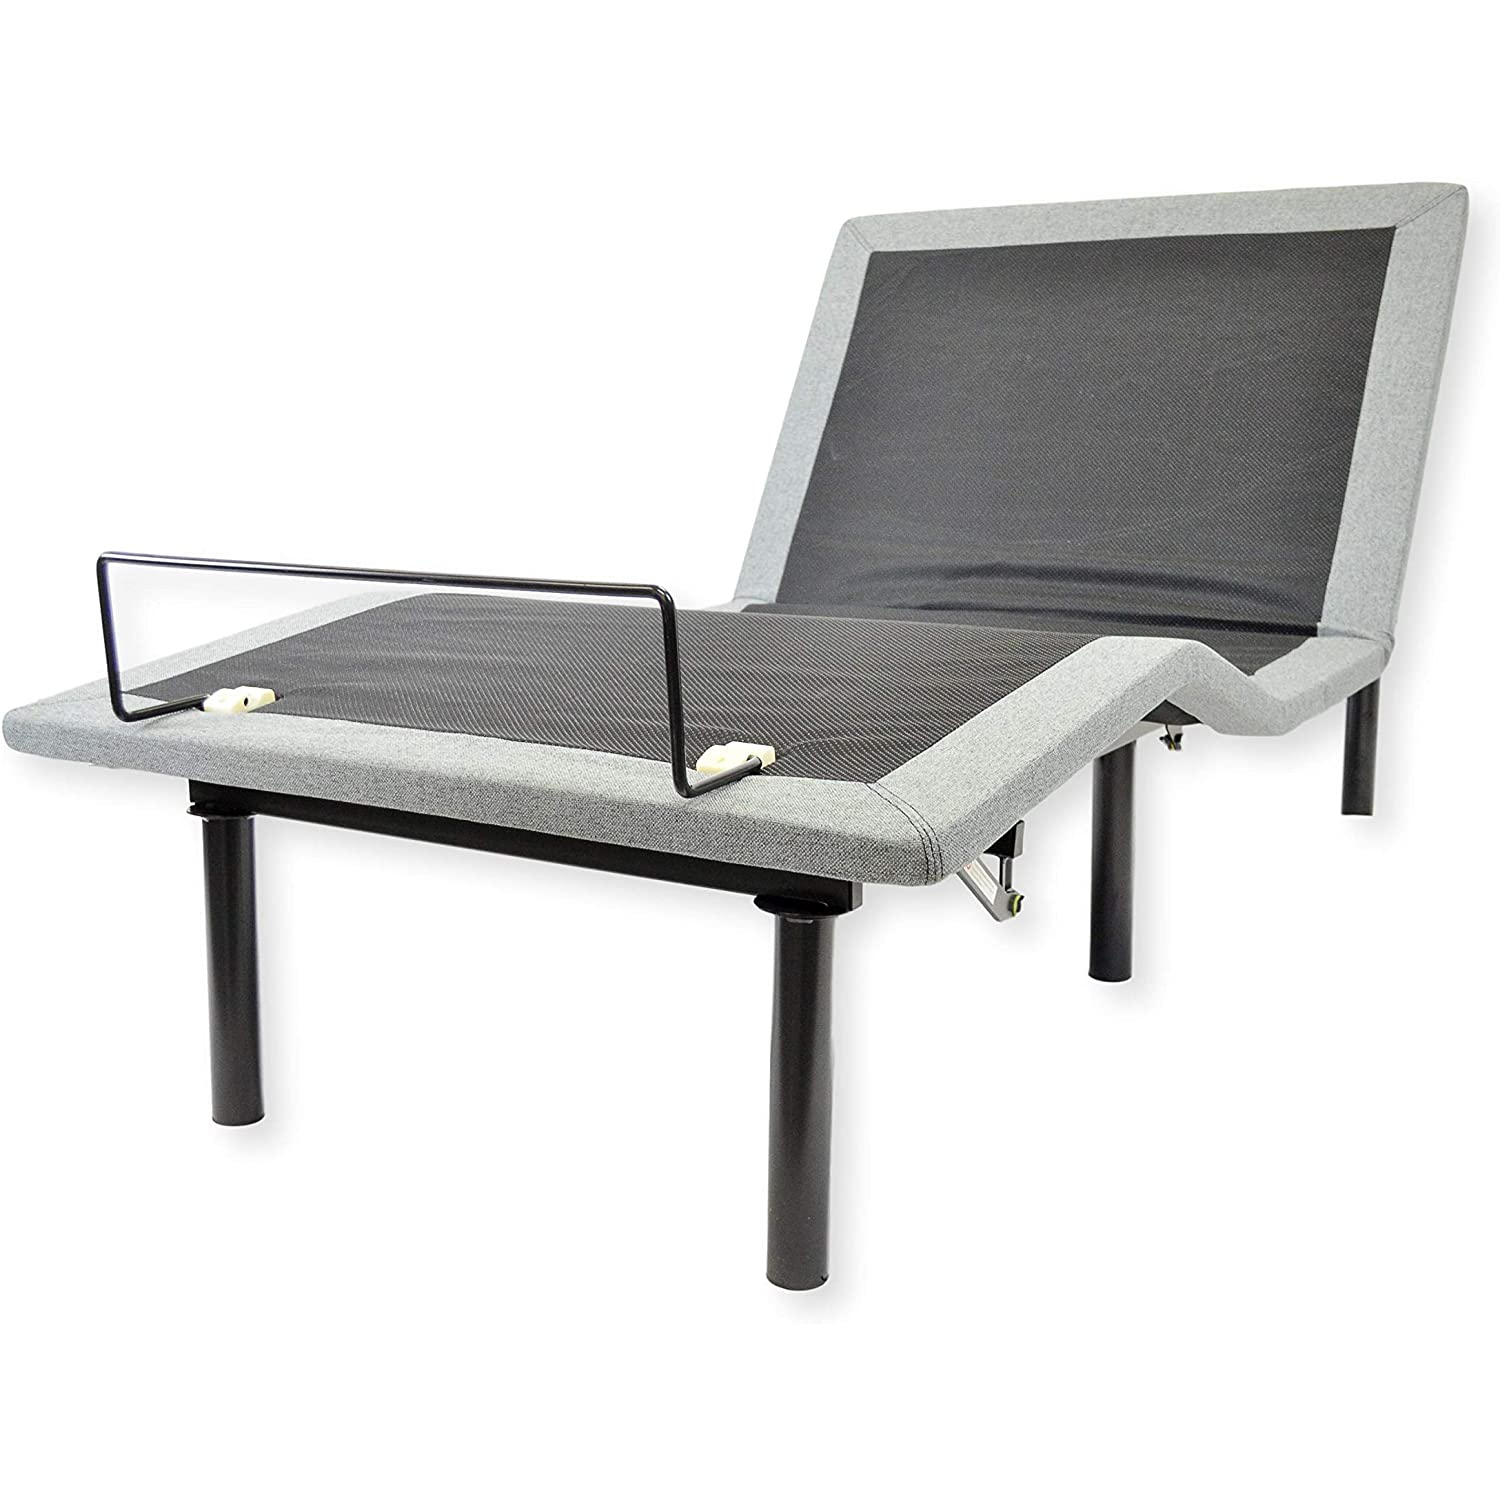 Viscologic Destiny Adjustable Luxury, Adjustable Bed Frame Vancouver Bc